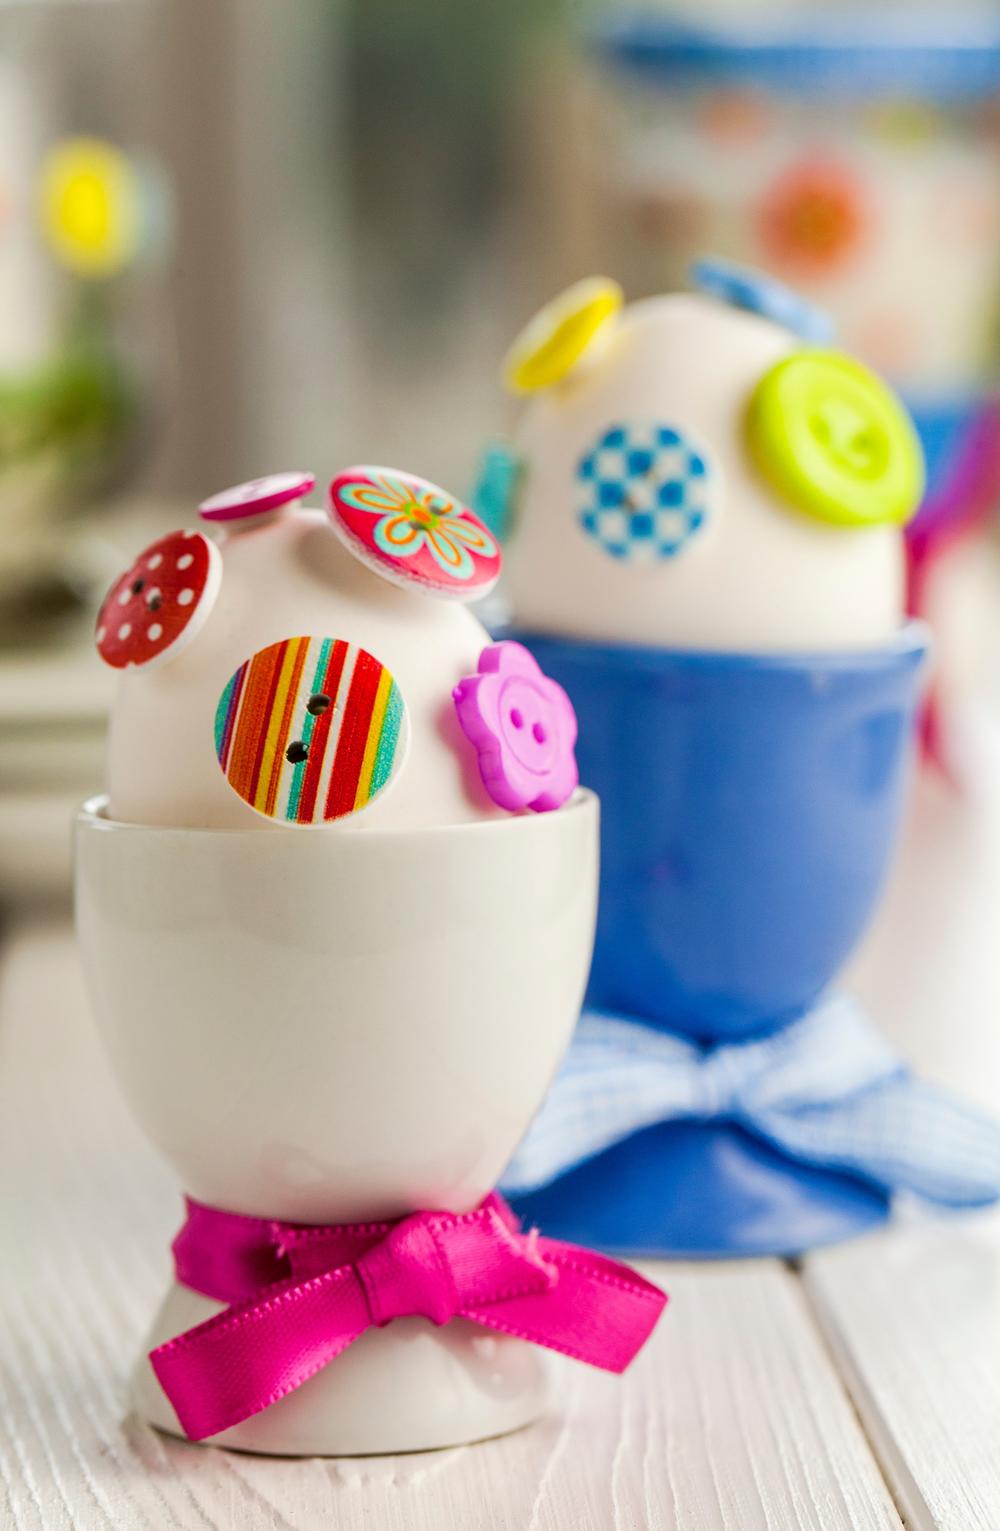 Ukoliko još uvek niste odlučili na koji način da oslikate jaja ove godine, evo nekoliko ideja.